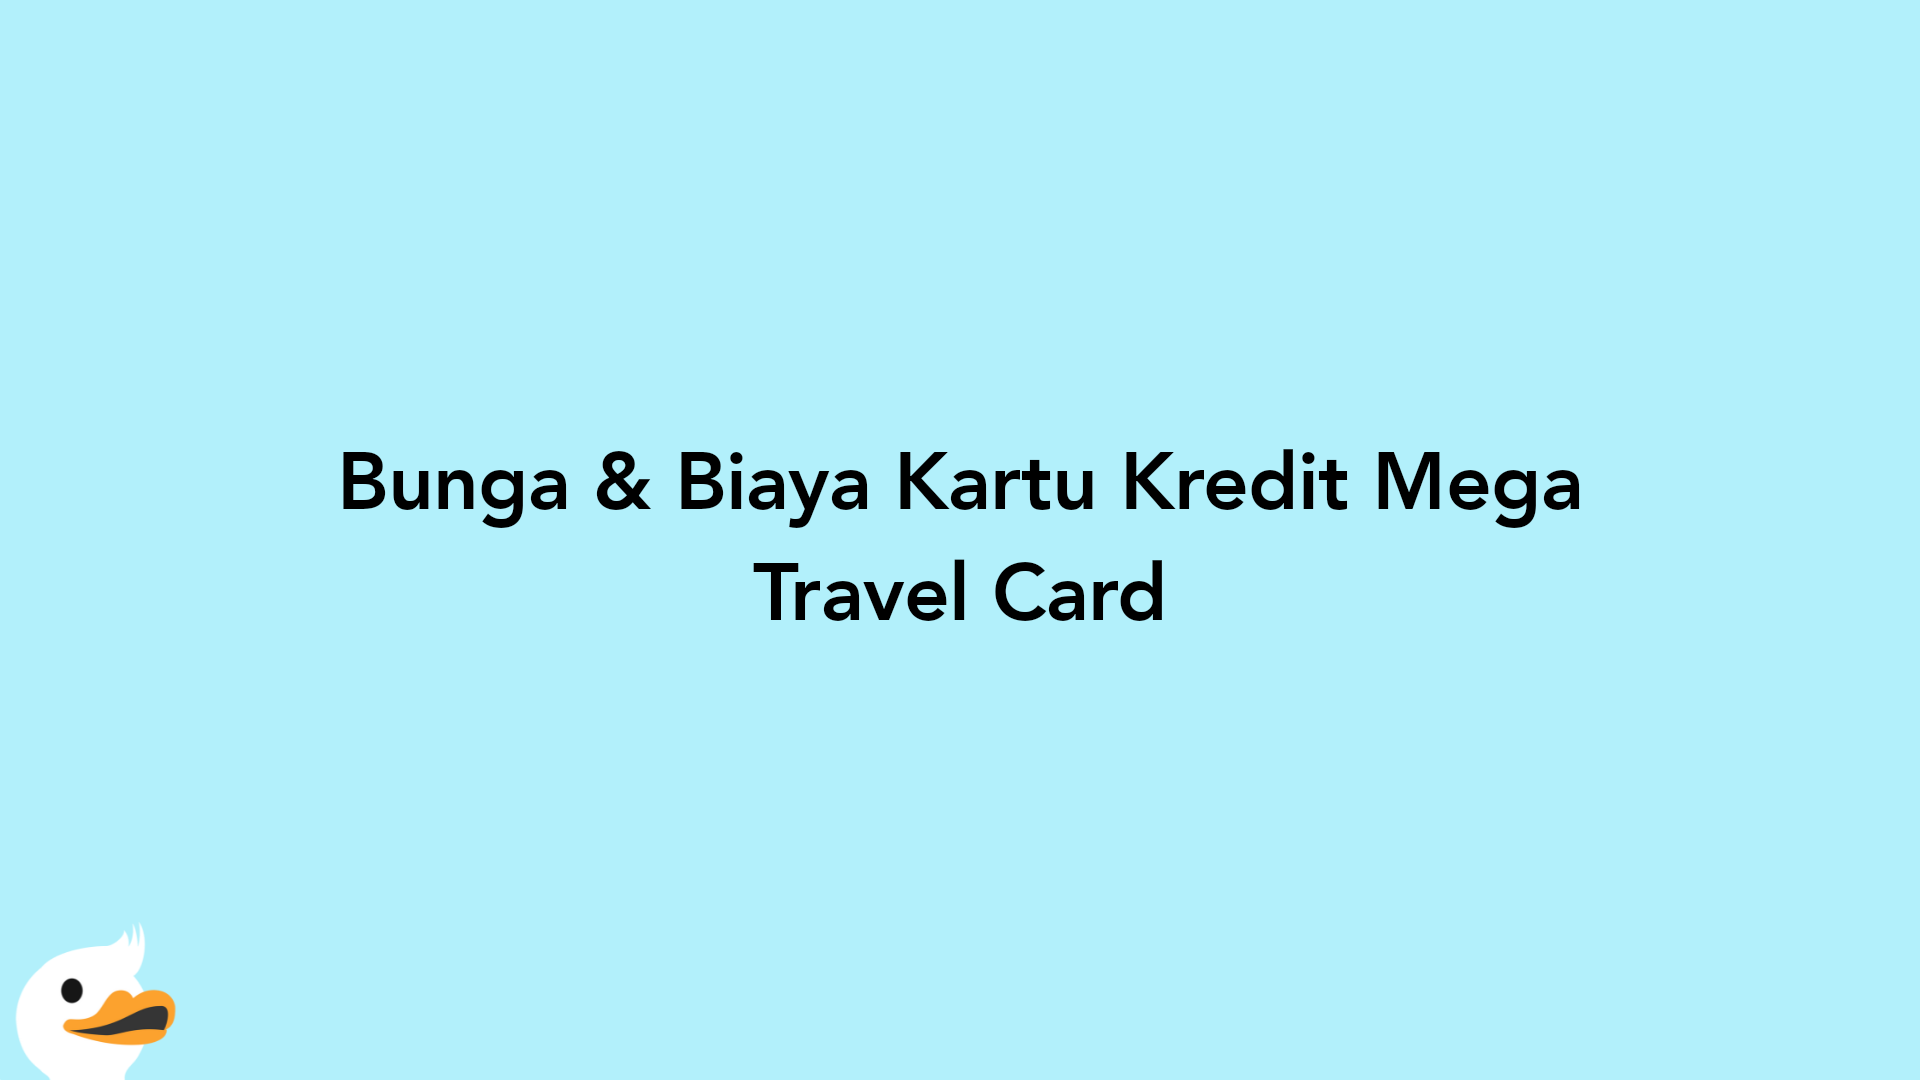 Bunga & Biaya Kartu Kredit Mega Travel Card